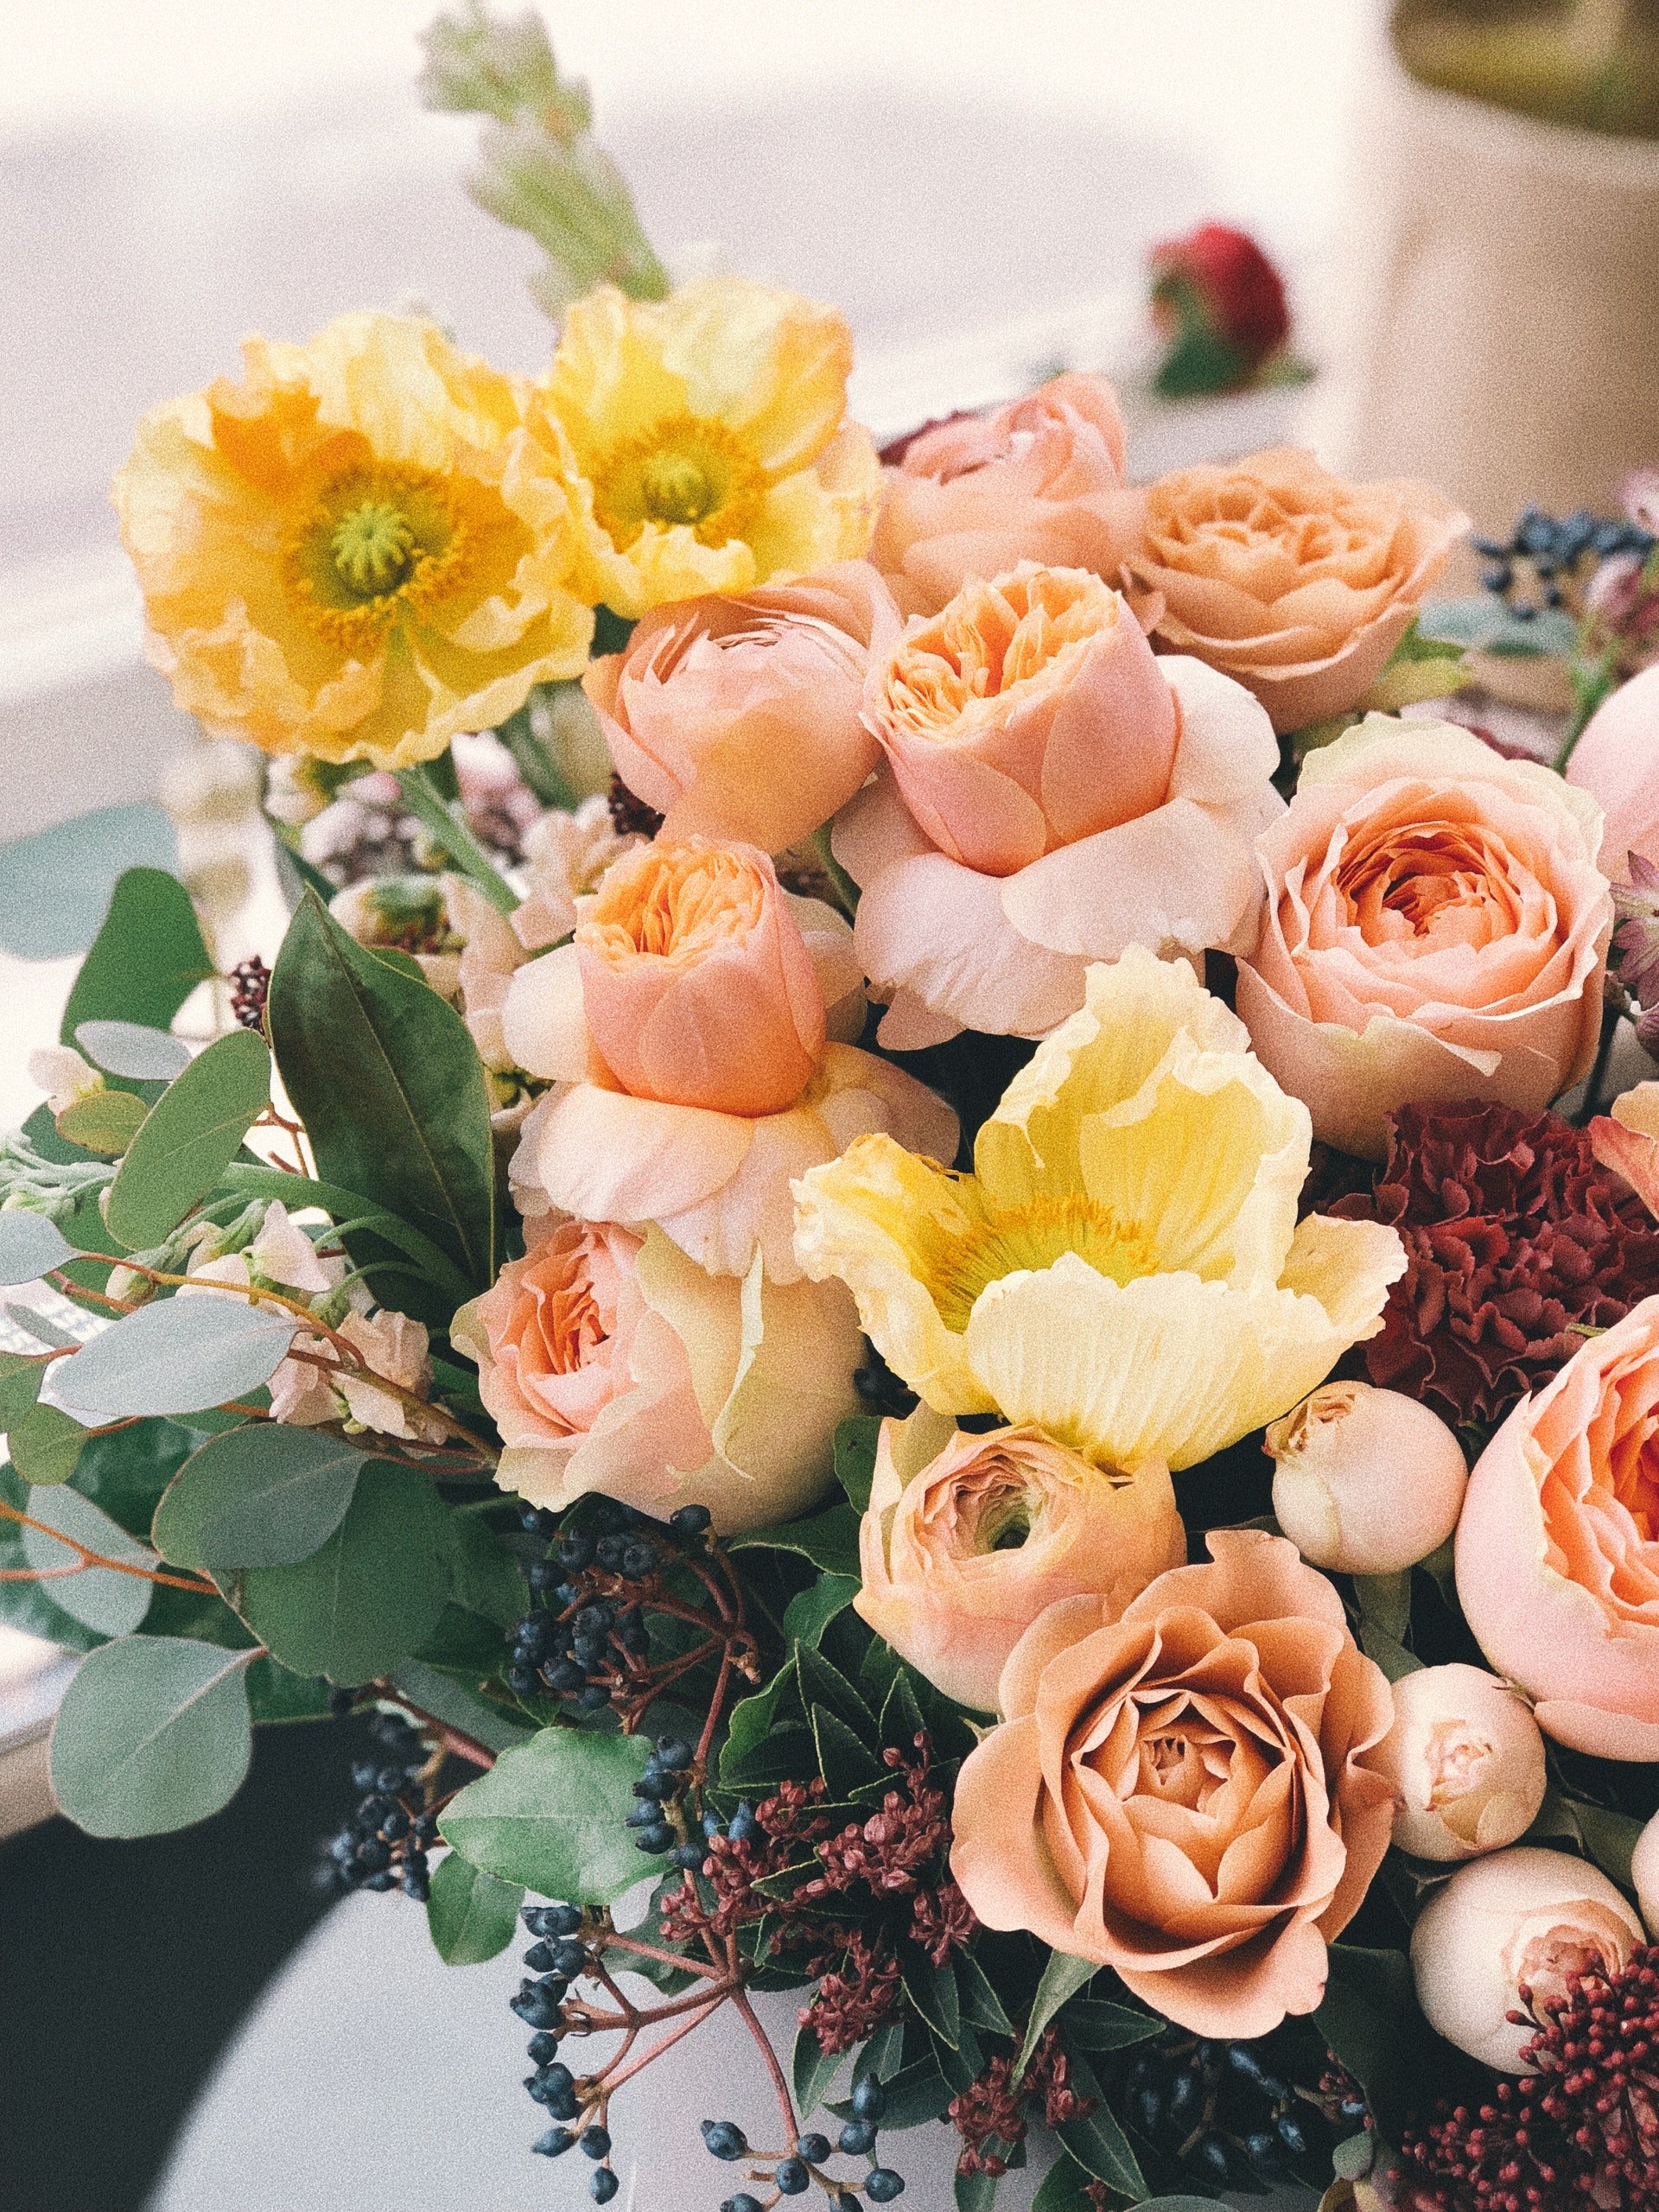 A bouquet of flowers | Photo: Pexels